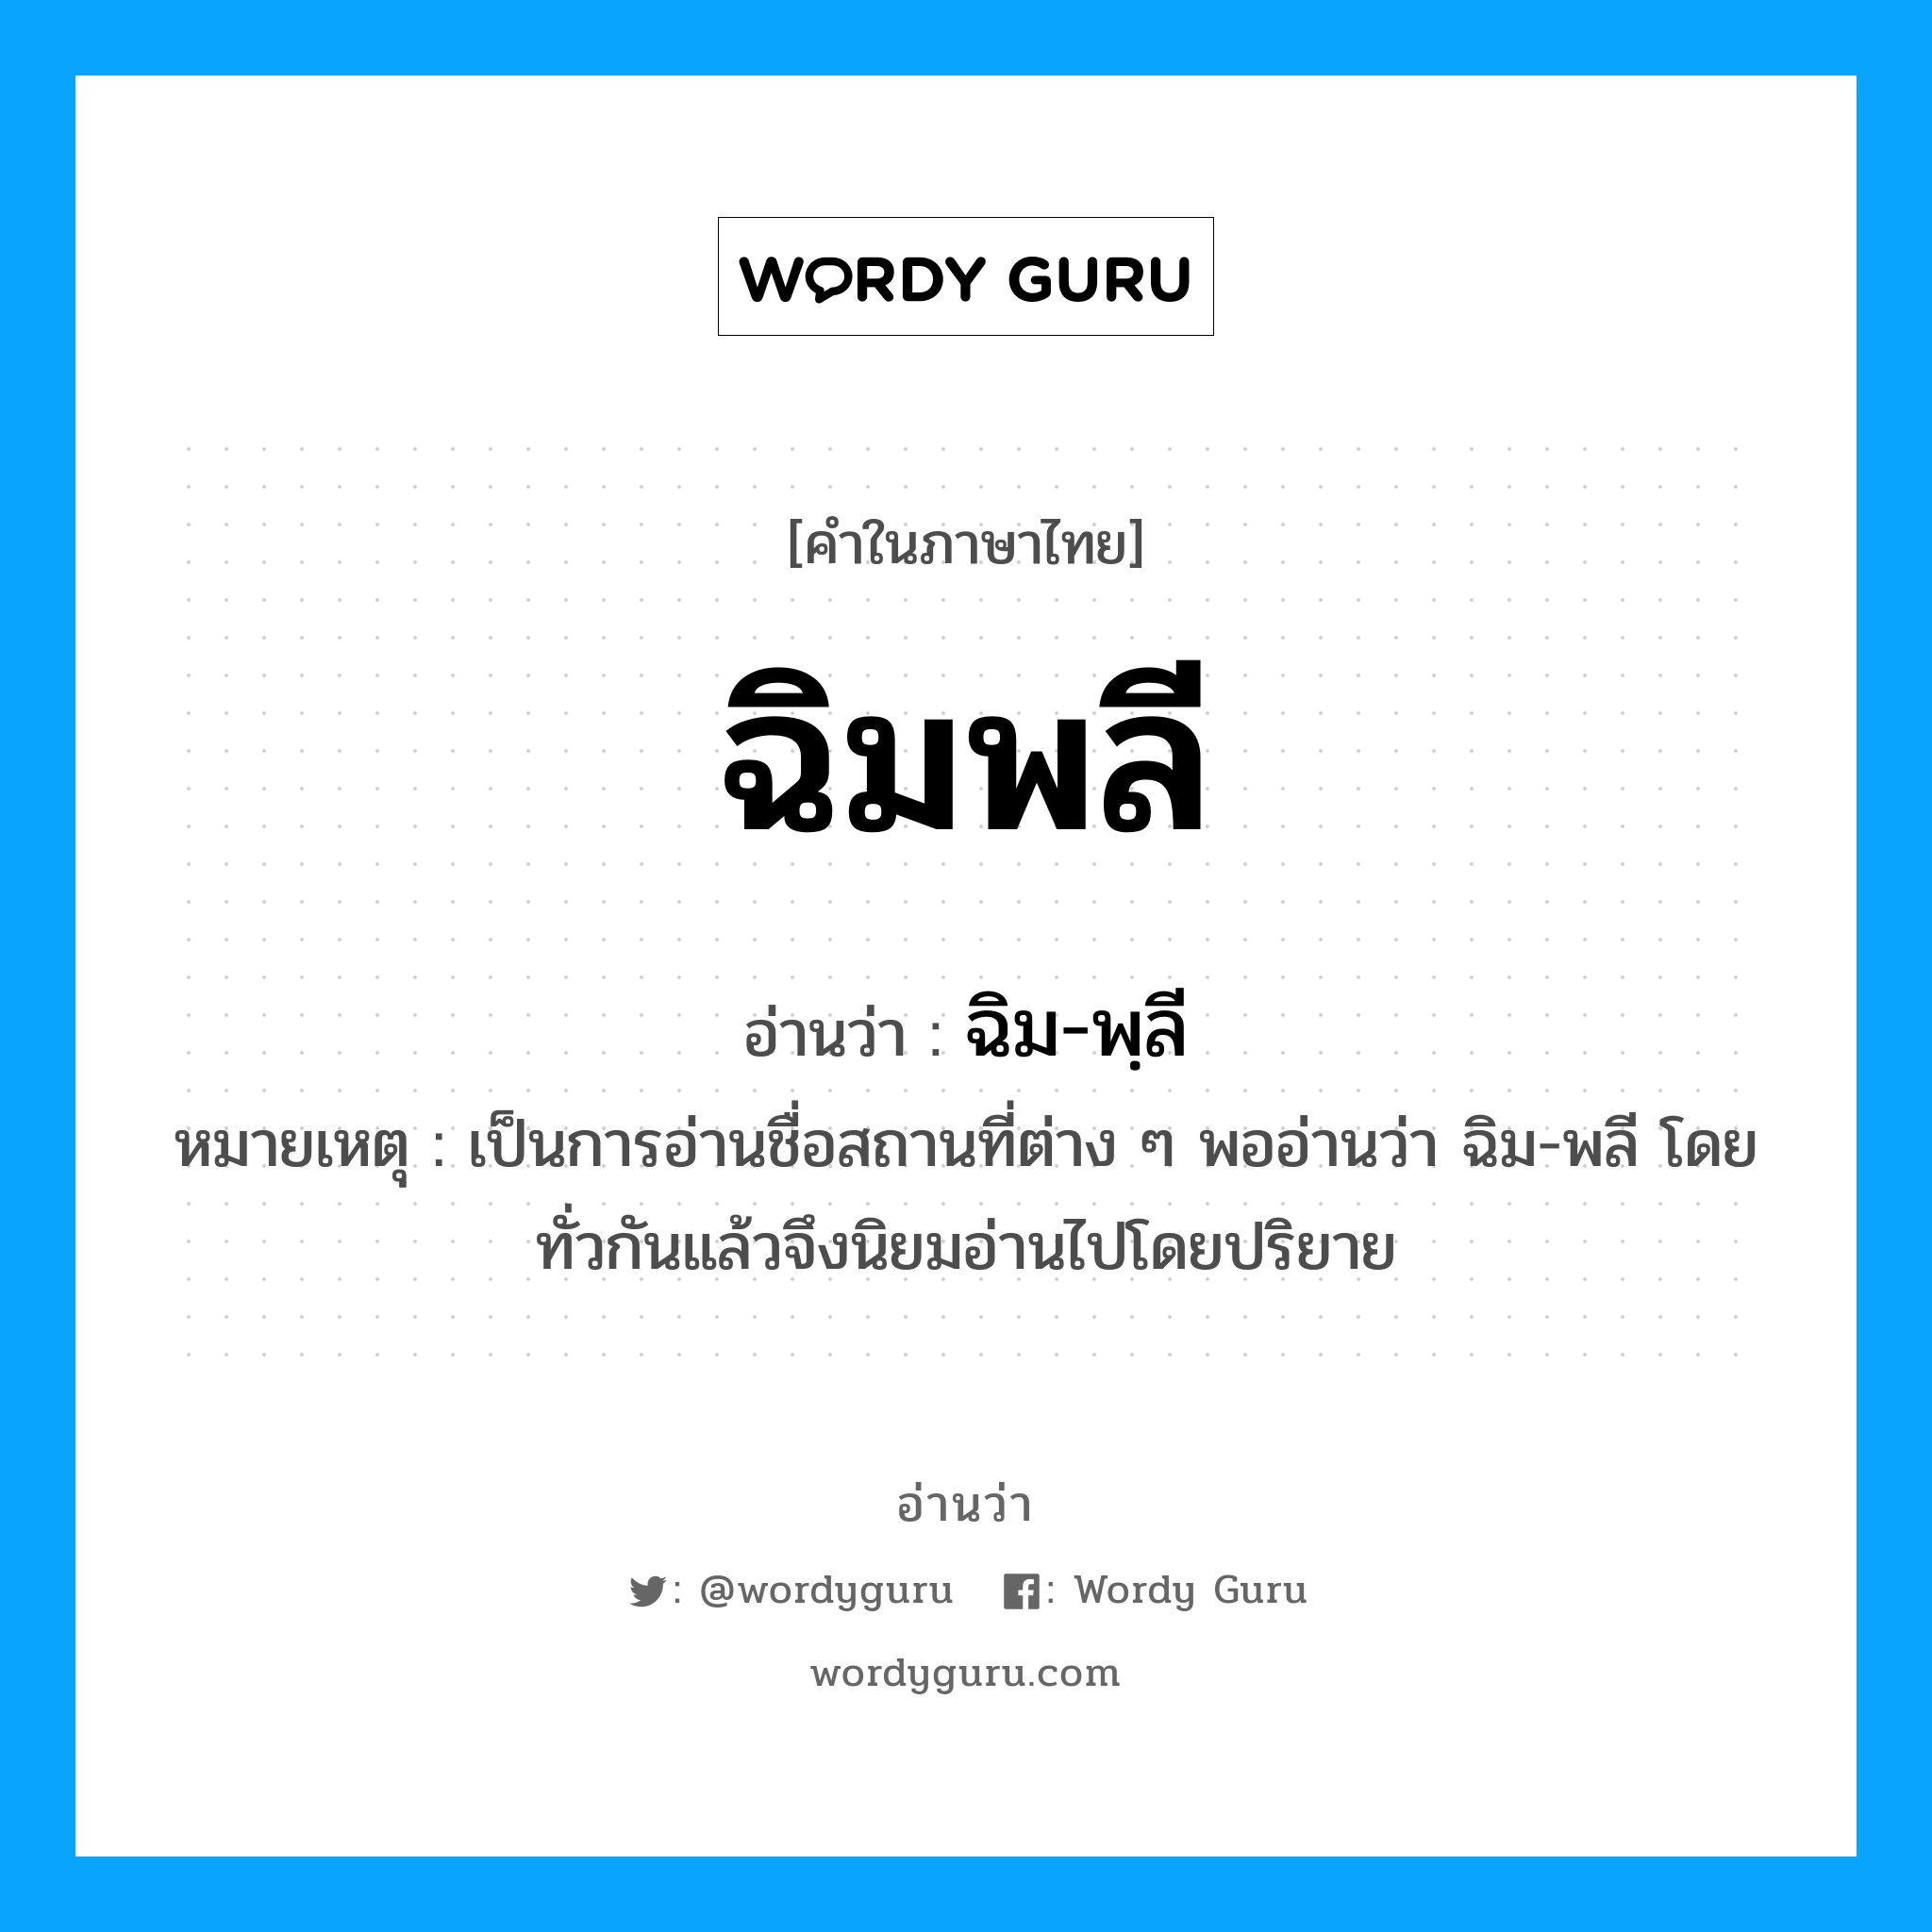 ฉิมพลี อ่านว่า?, คำในภาษาไทย ฉิมพลี อ่านว่า ฉิม-พฺลี หมวด สถานที่ หมายเหตุ เป็นการอ่านชื่อสถานที่ต่าง ๆ พออ่านว่า ฉิม-พลี โดยทั่วกันแล้วจึงนิยมอ่านไปโดยปริยาย หมวด สถานที่